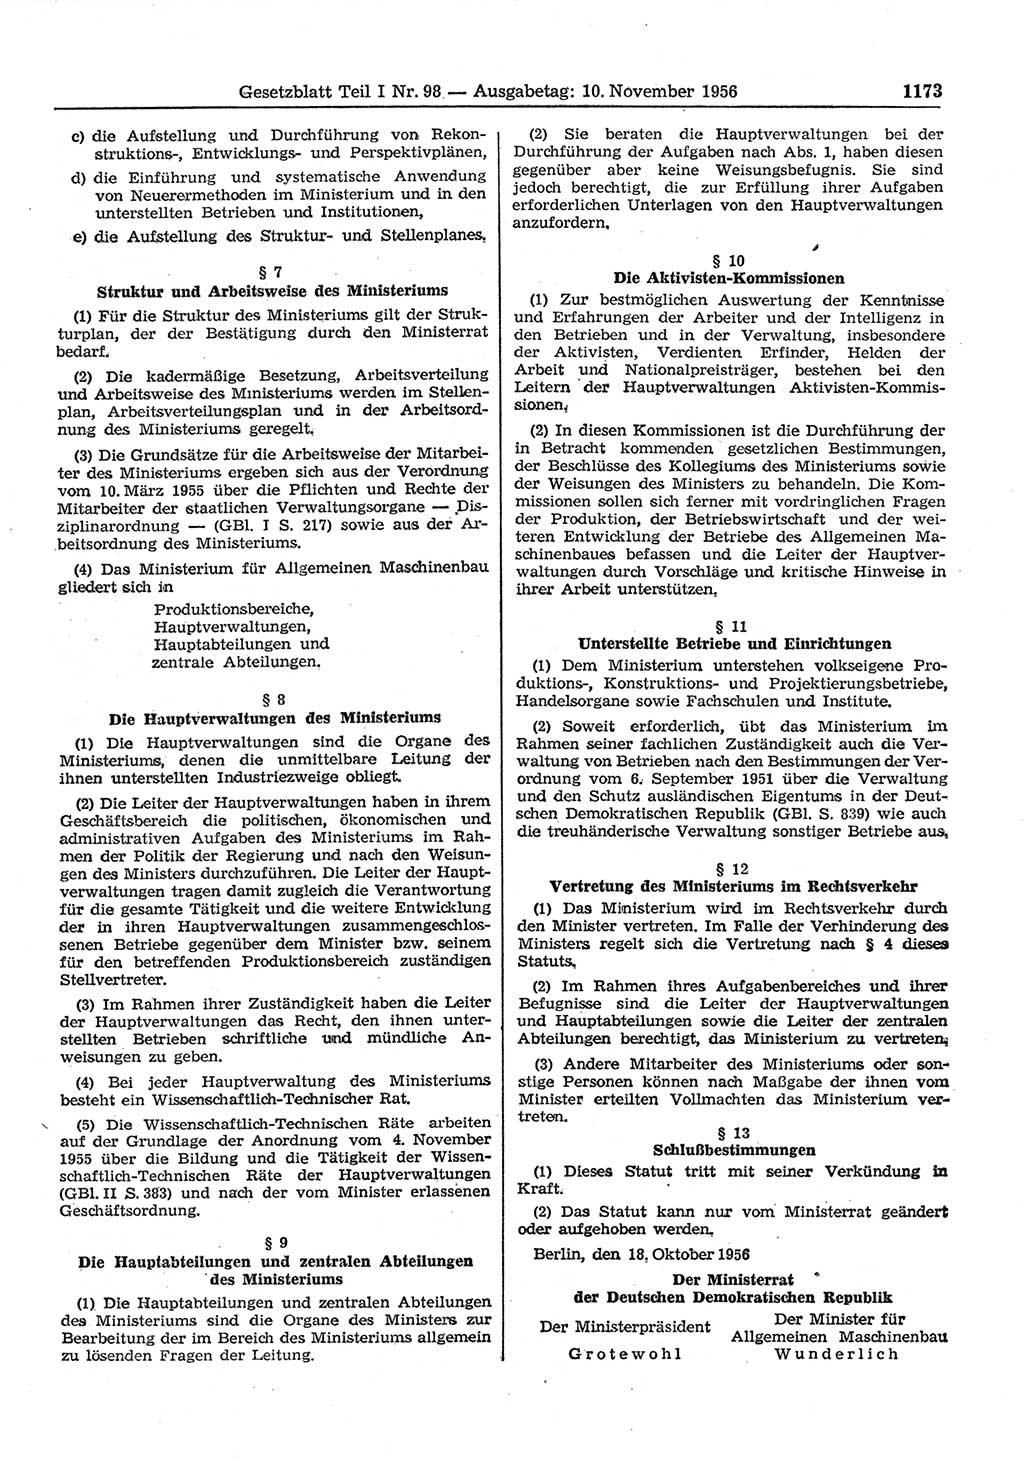 Gesetzblatt (GBl.) der Deutschen Demokratischen Republik (DDR) Teil Ⅰ 1956, Seite 1173 (GBl. DDR Ⅰ 1956, S. 1173)